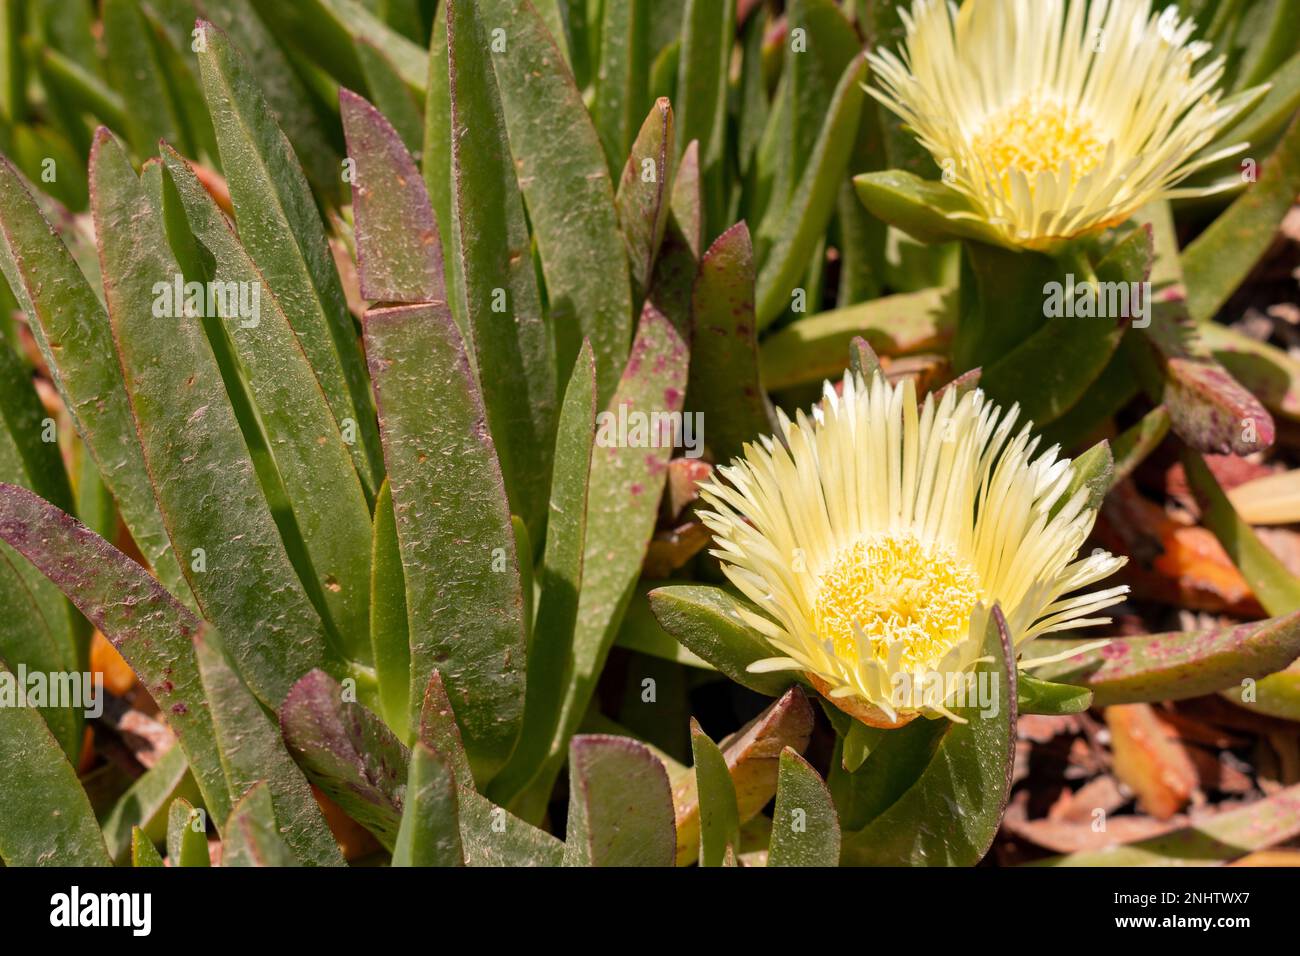 Carpobrotus succulent plant with yellow flowers Stock Photo